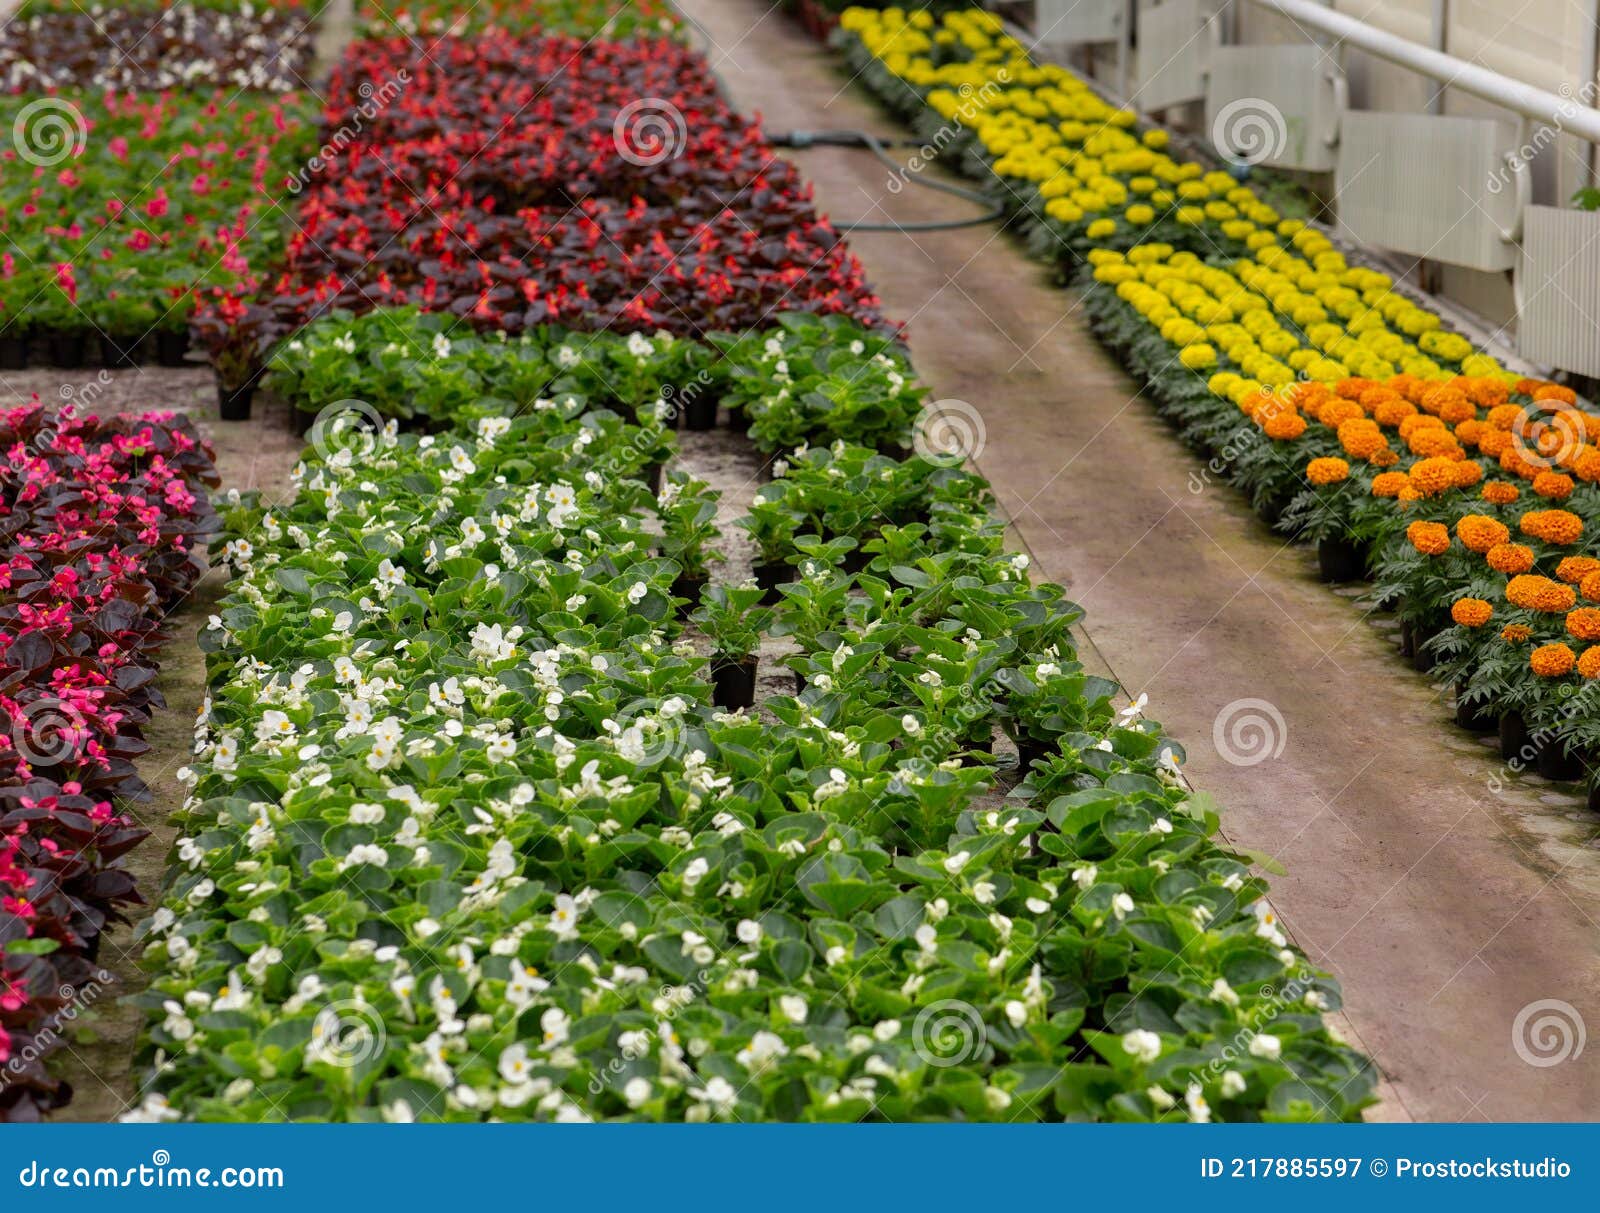 Invernadero Lleno De Flores De Colores. Naturaleza De Verano En Naranjería  Imagen de archivo - Imagen de industrial, edificio: 217885597